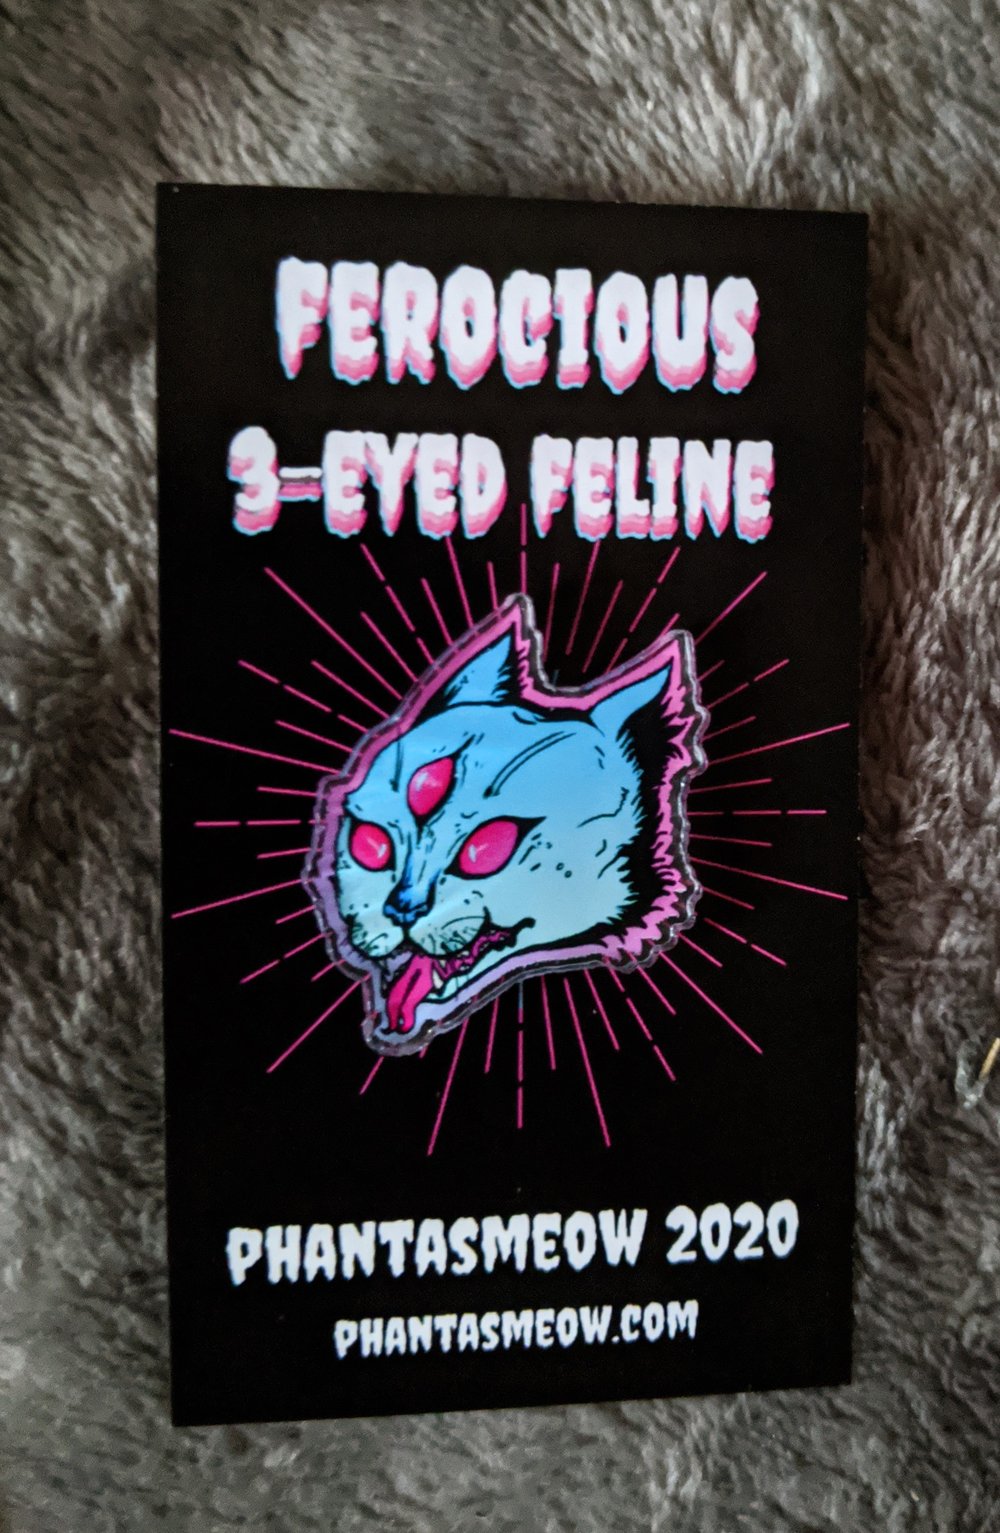 Image of Ferocious 3-eyed feline PIN 